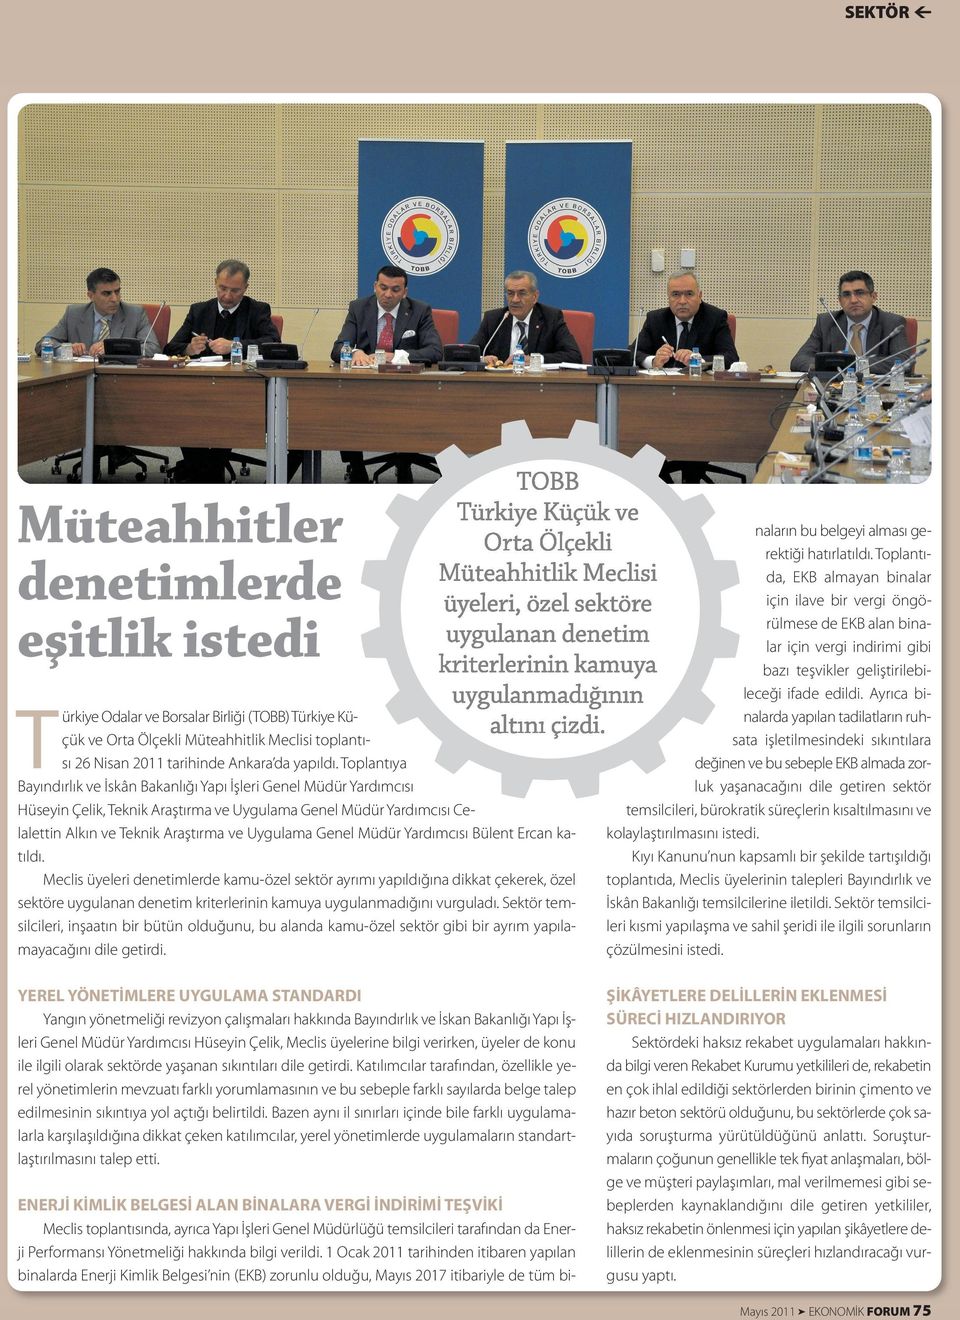 Müdür Yardımcısı Bülent Ercan katıldı. Meclis üyeleri denetimlerde kamu-özel sektör ayrımı yapıldığına dikkat çekerek, özel sektöre uygulanan denetim kriterlerinin kamuya uygulanmadığını vurguladı.